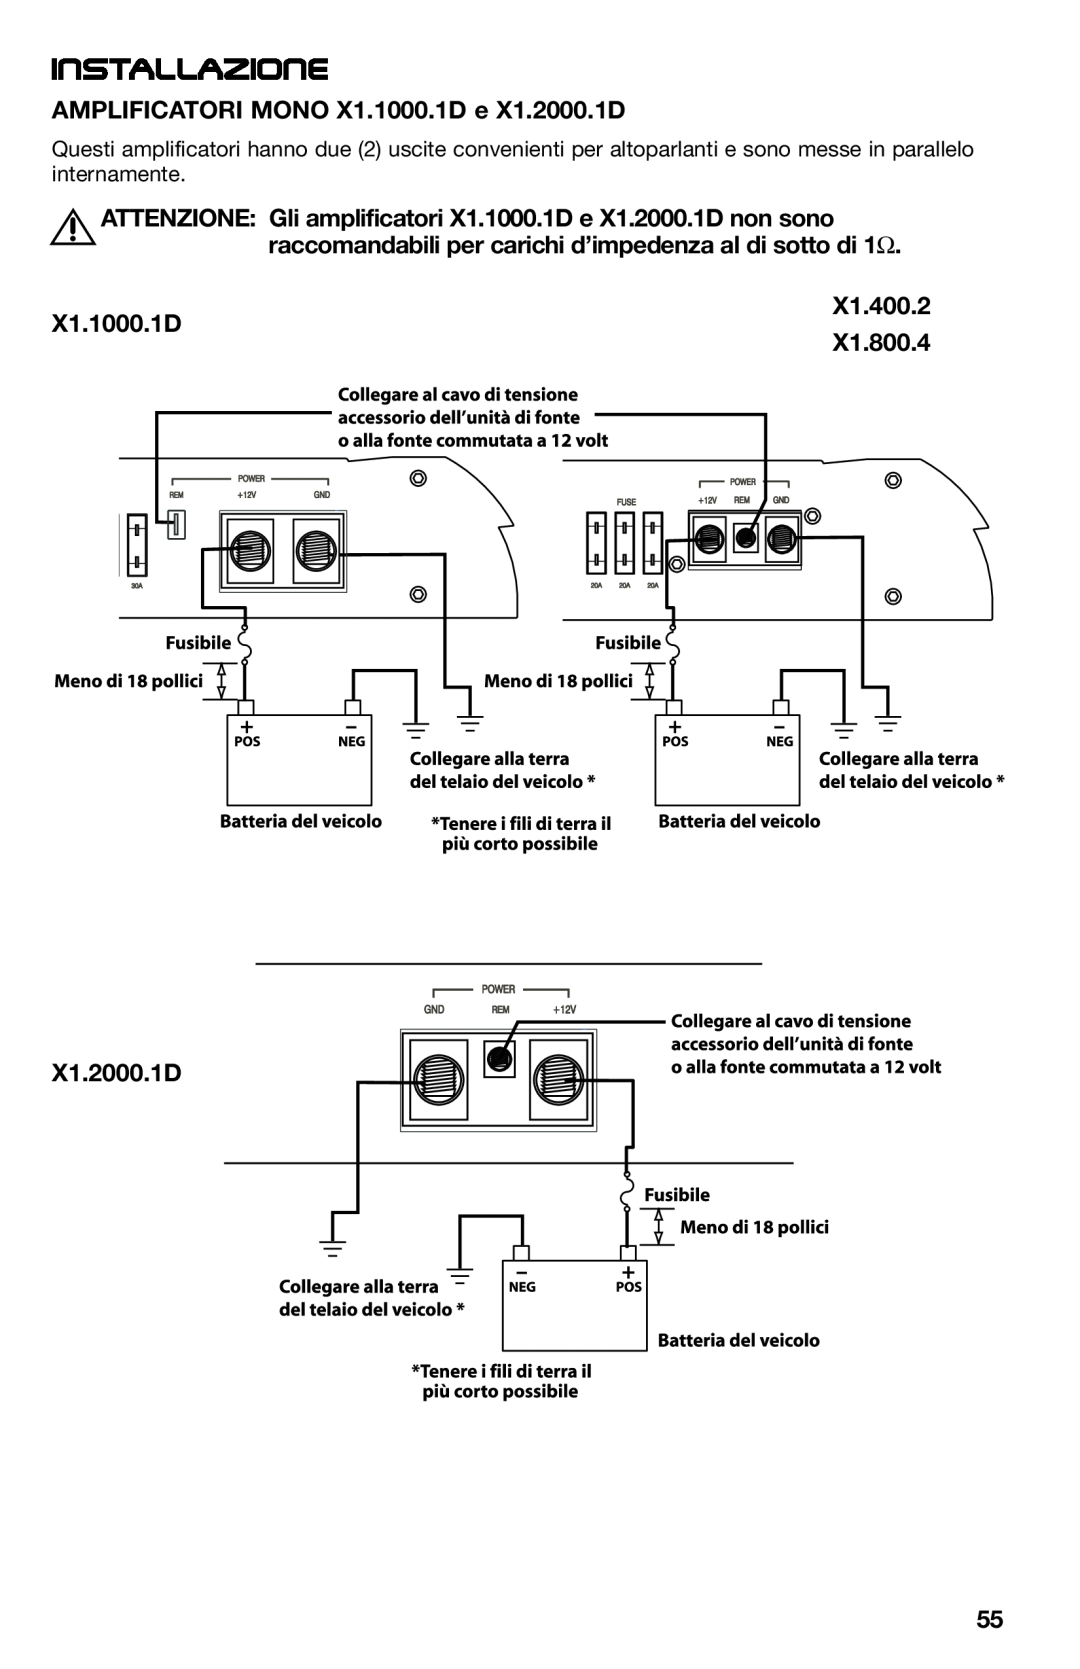 Lightning Audio Installazione, AMPLIFICATORI MONO X1.1000.1D e X1.2000.1D, X1.400.2 X1.1000.1D X1.800.4 X1.2000.1D 